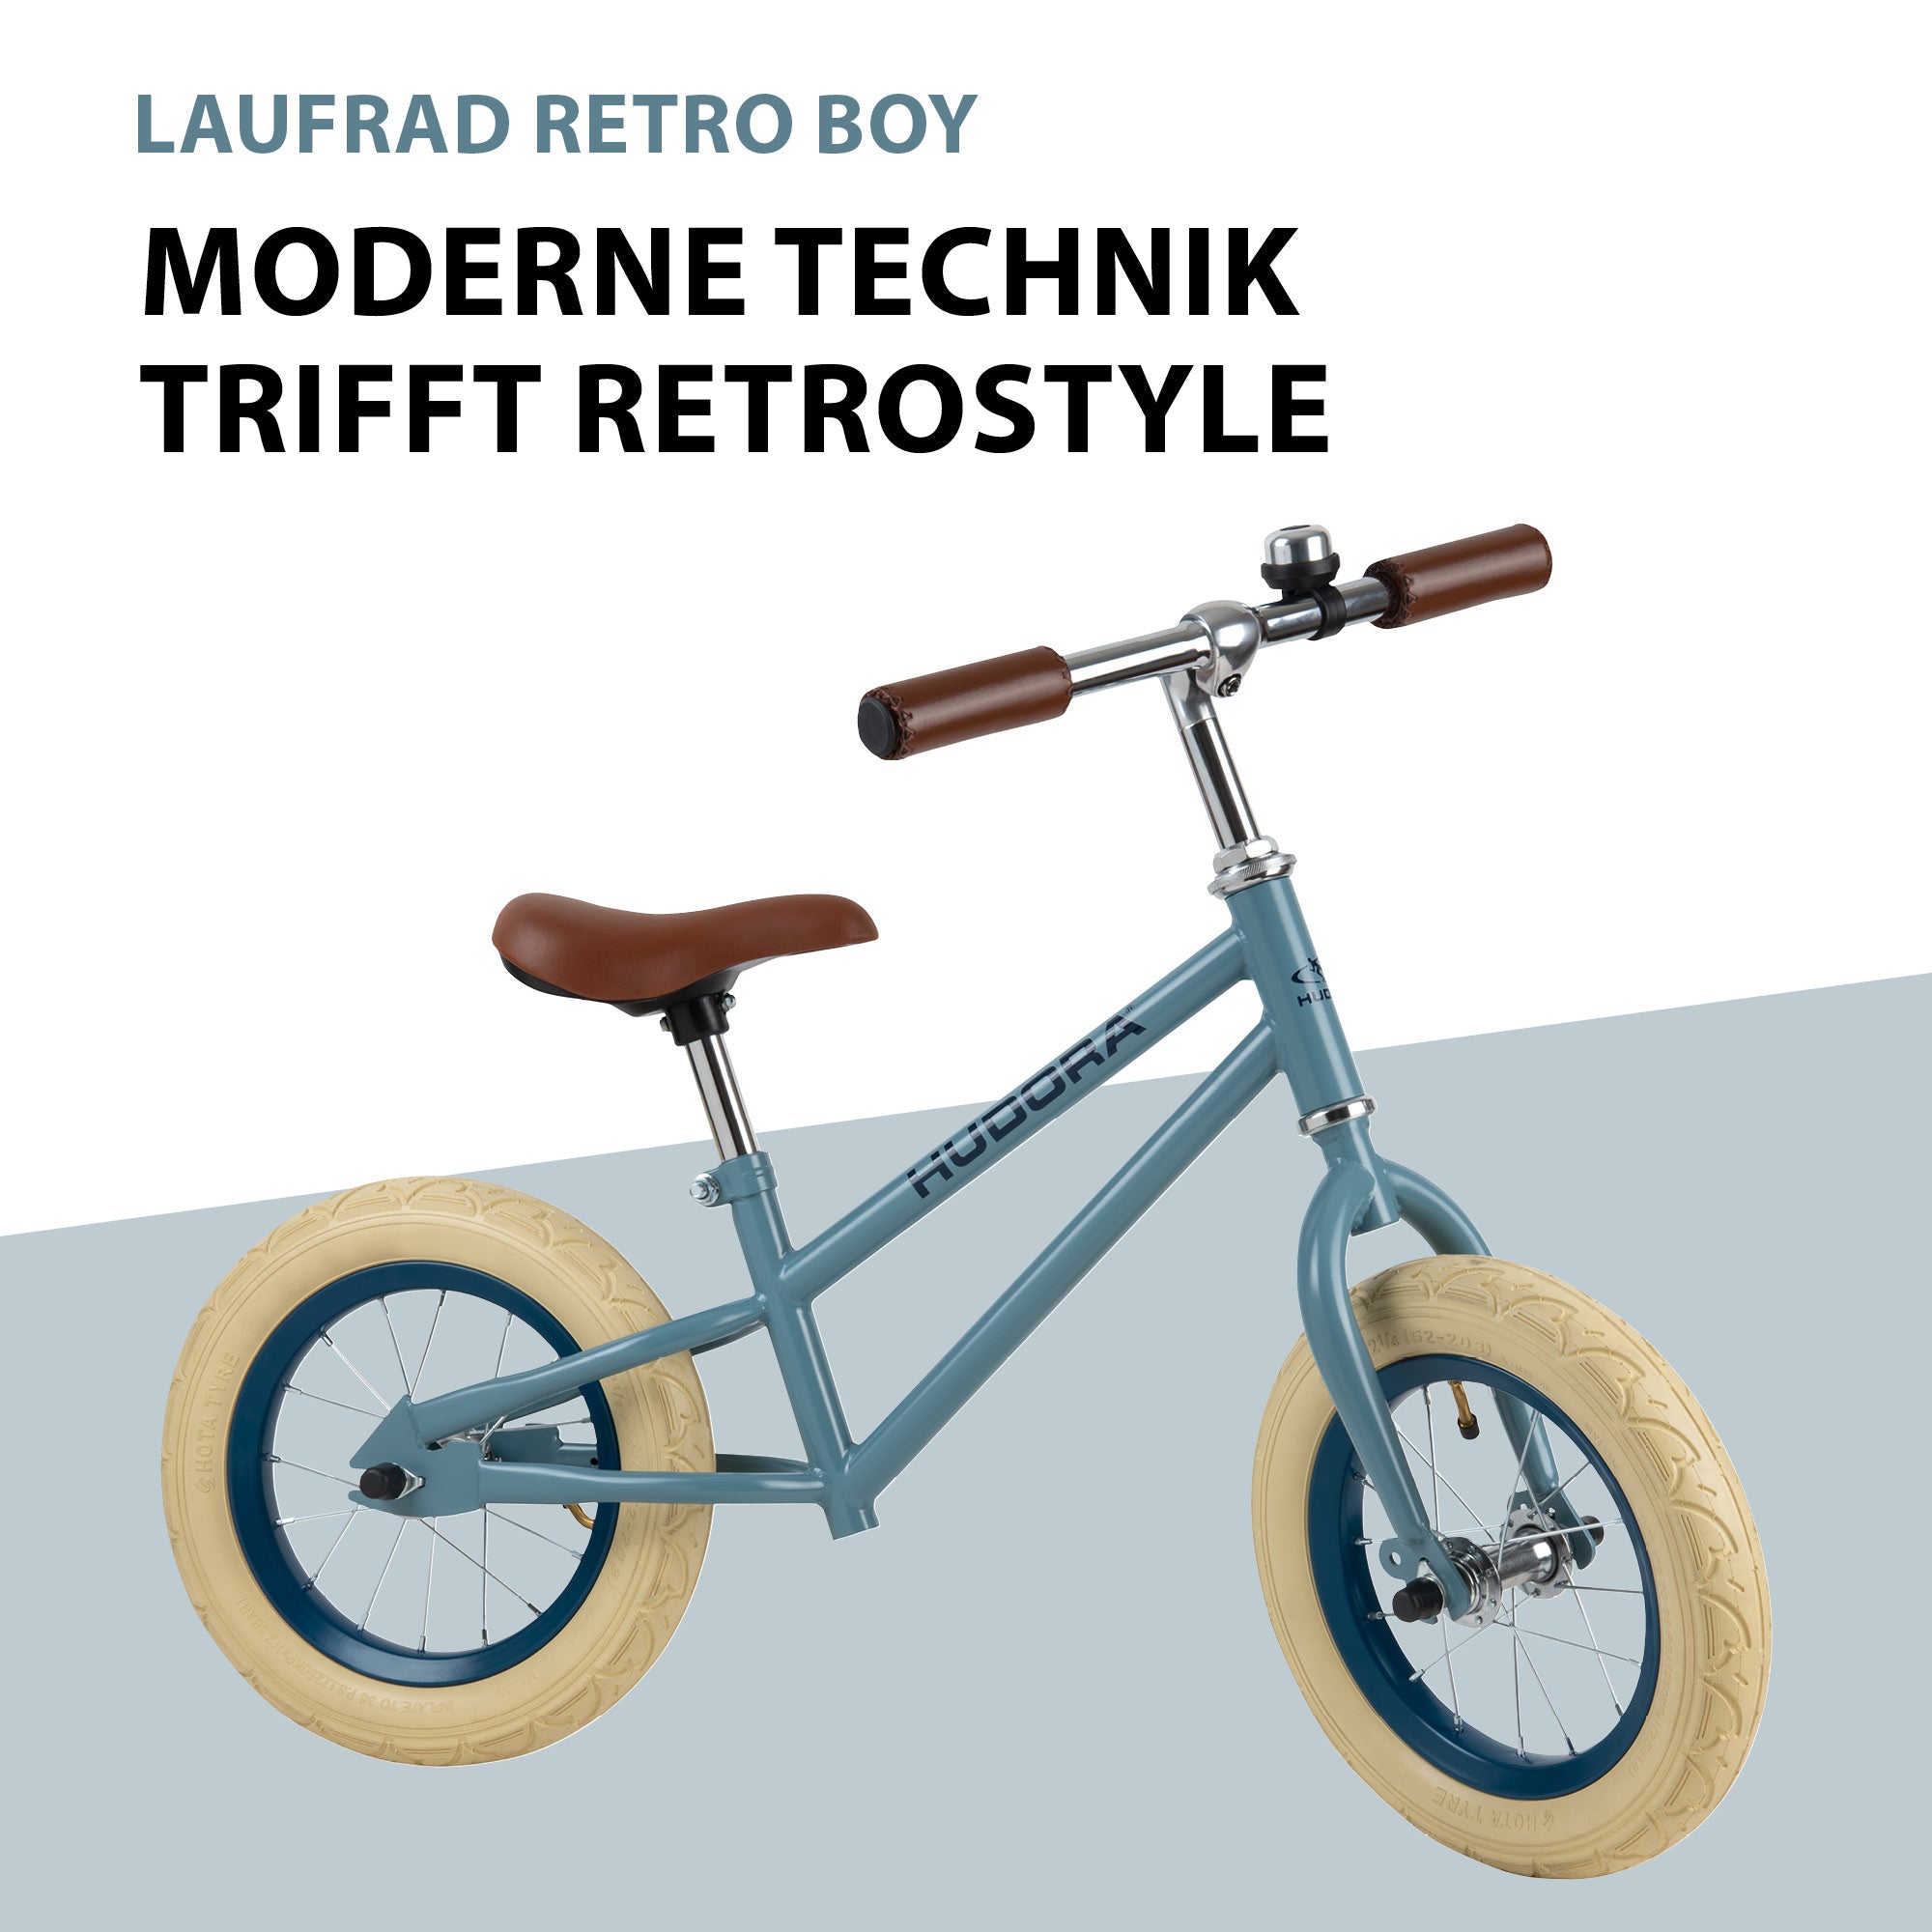 Bicicletă de echilibru retro albastră cu cos, buzunar si claxon vintage